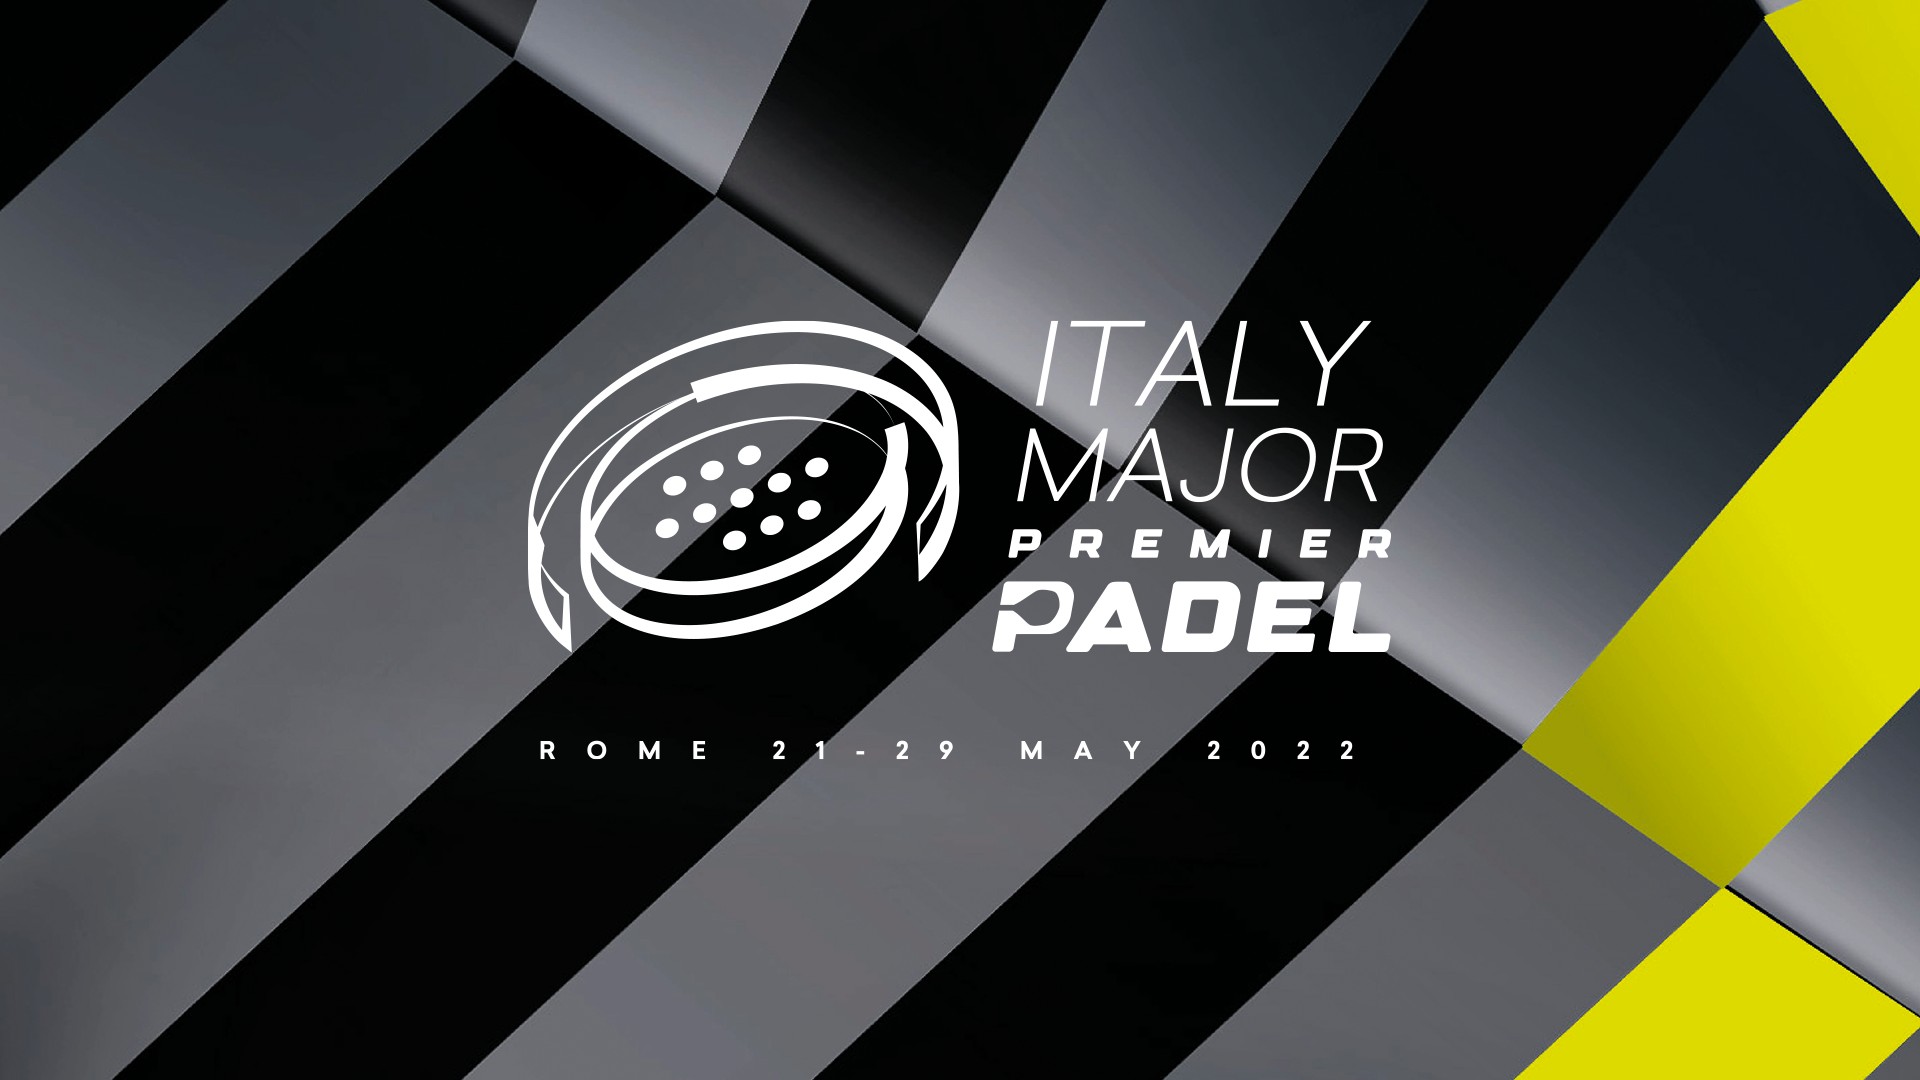 Italien major Premier Padel gå till historien